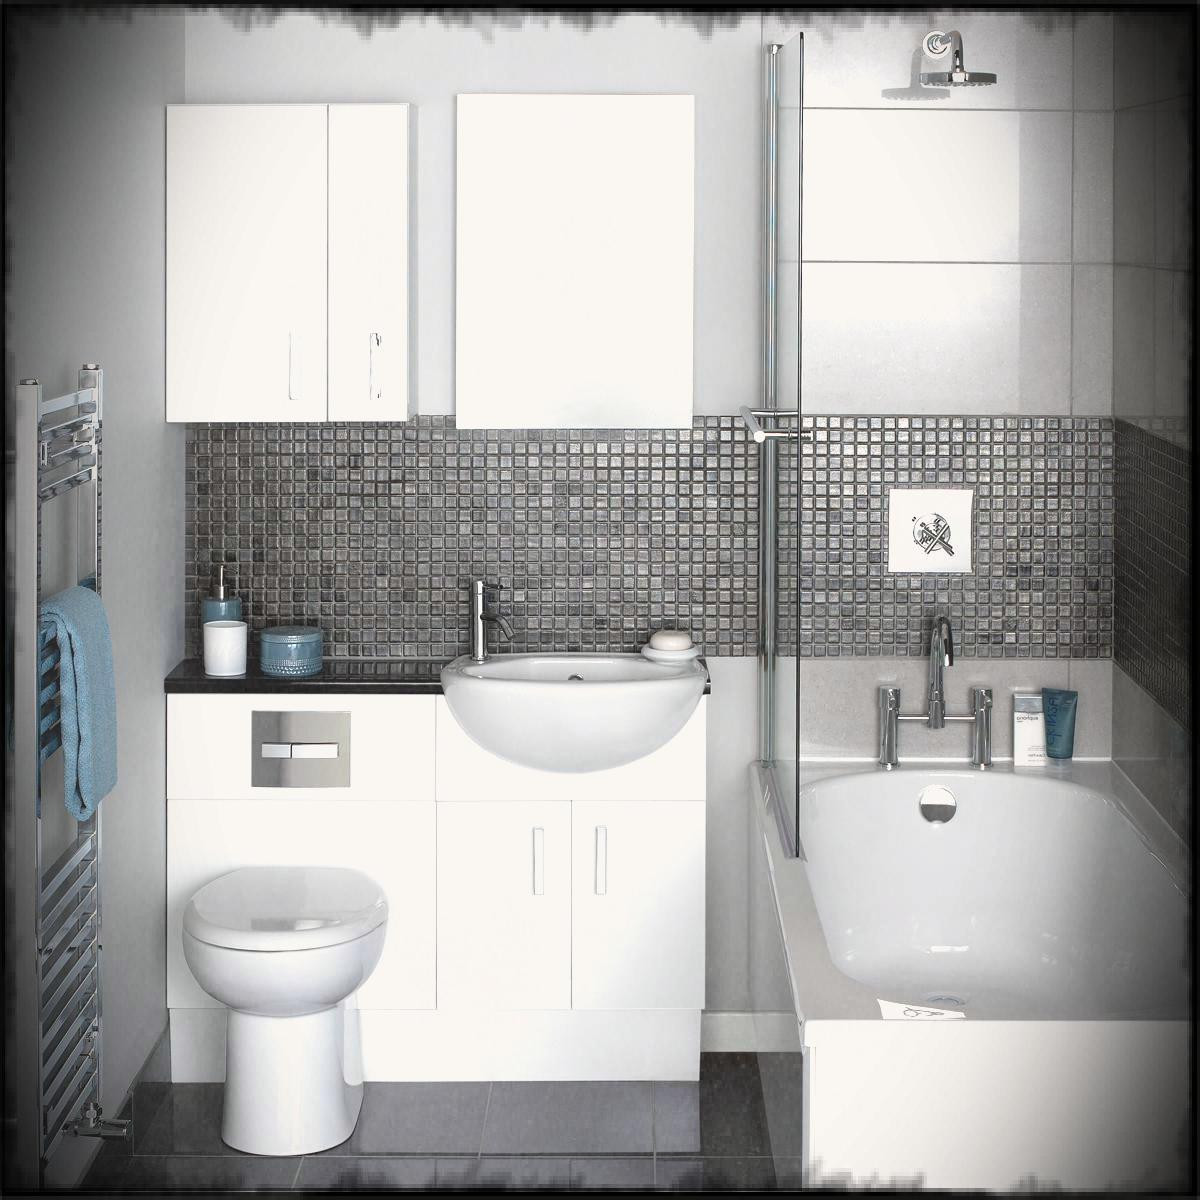 Tile Ideas For Small Bathroom
 50 magnificent ultra modern bathroom tile ideas photos